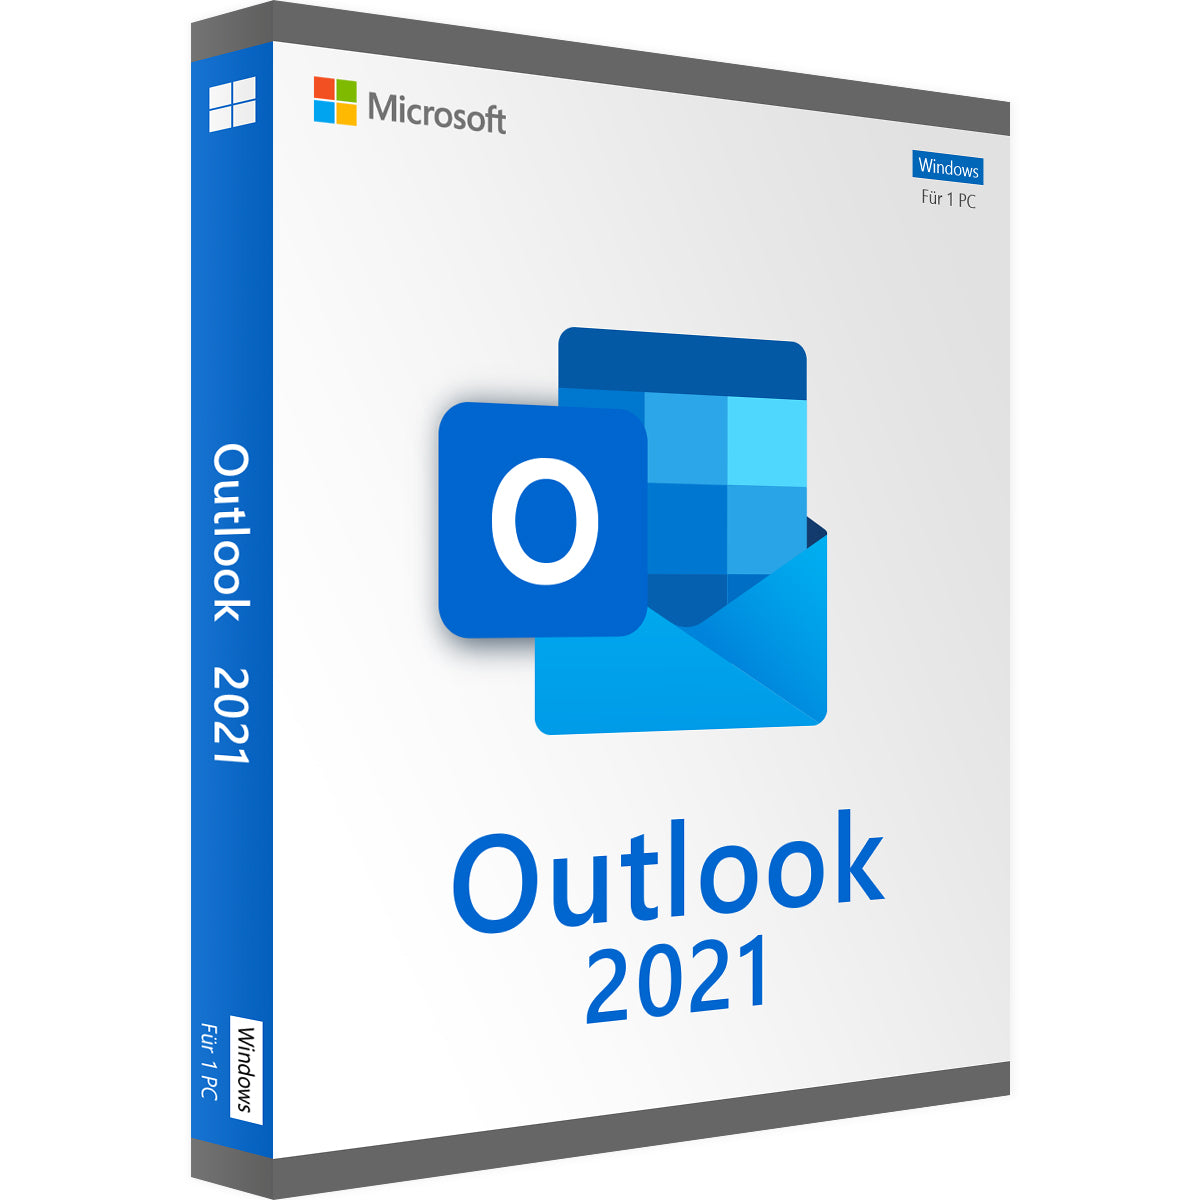 MICROSOFT OUTLOOK 2021 - Produktschlüssel - Vollversion - Sofort-Download - 1 PC von Microsoft